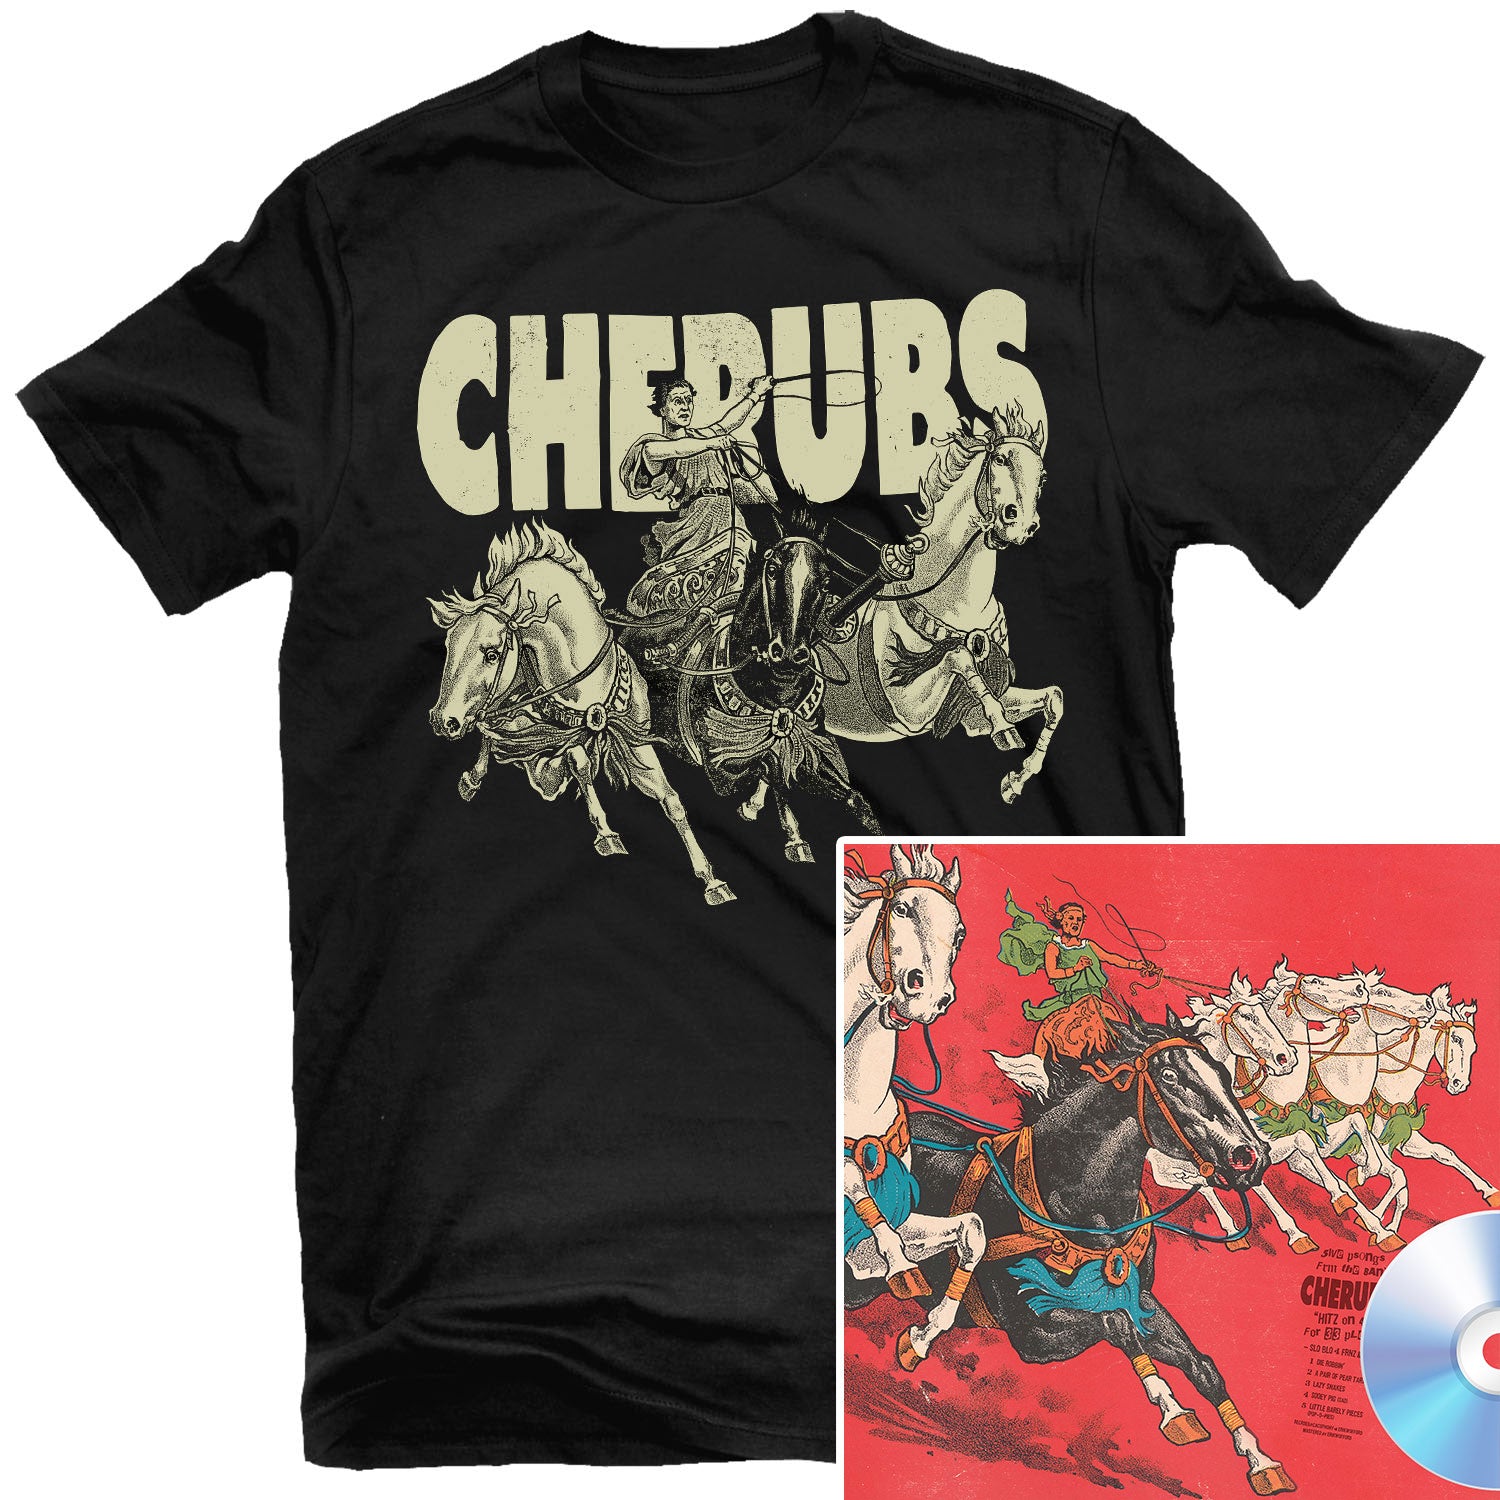 Cherubs "SLO BLO 4 FRNZ & SXY T Shirt + CD Bundle" Bundle